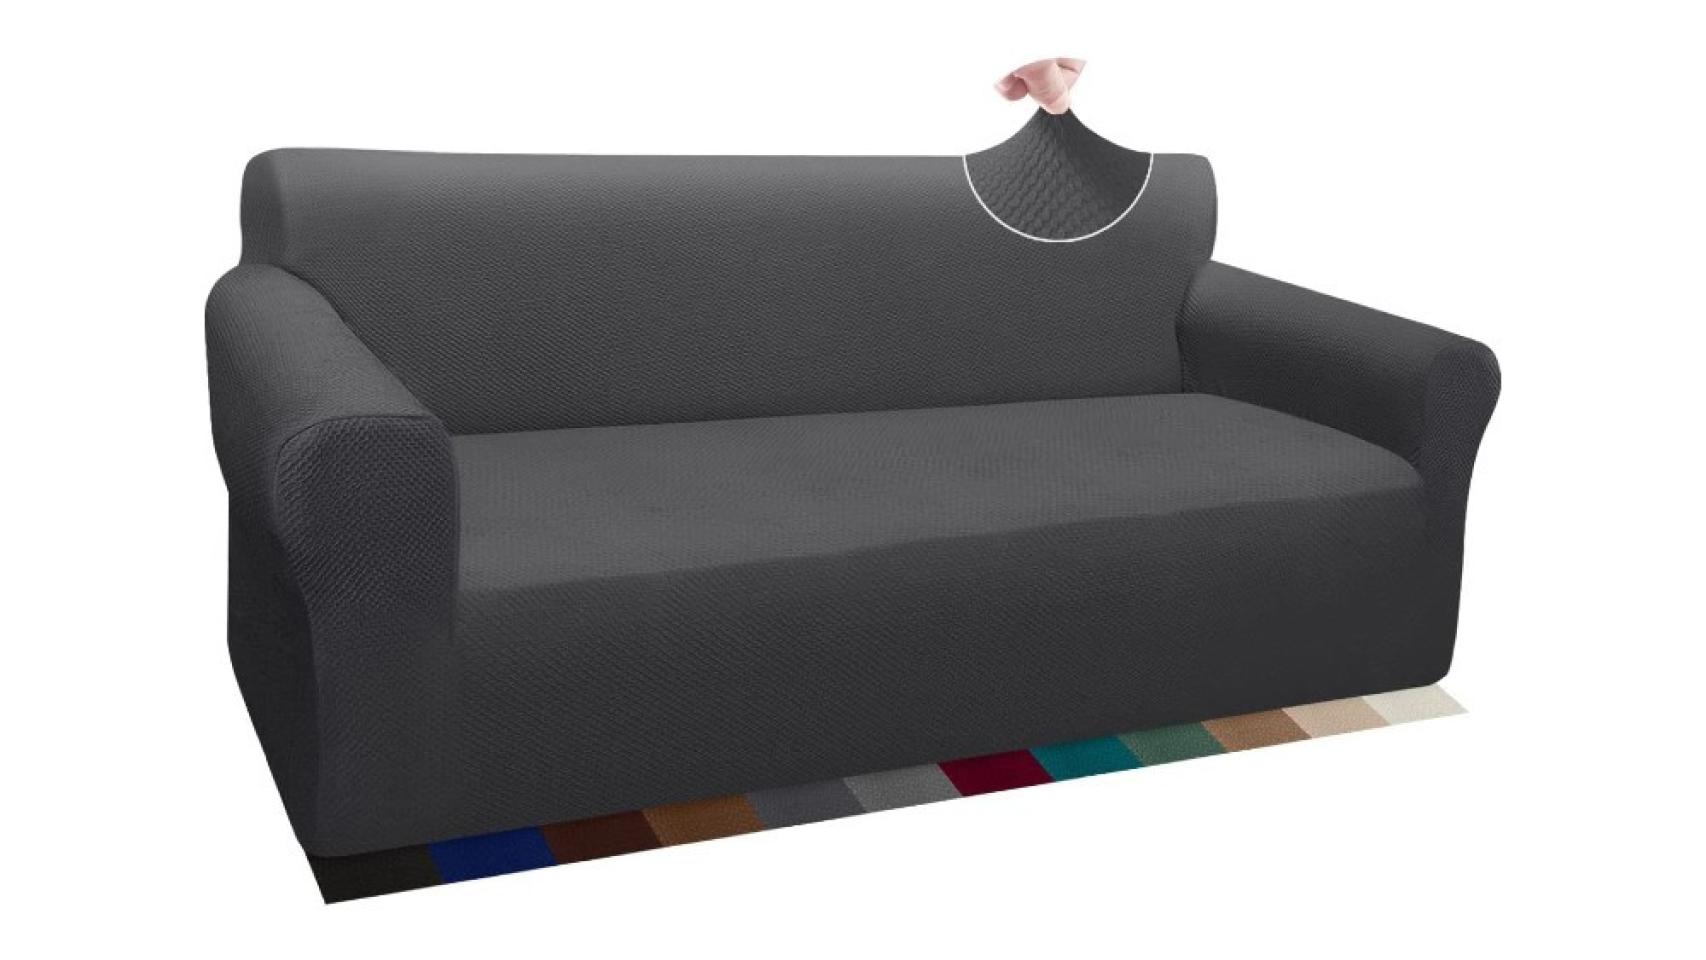 Las 9 mejores fundas cubre sofá para protegerlo